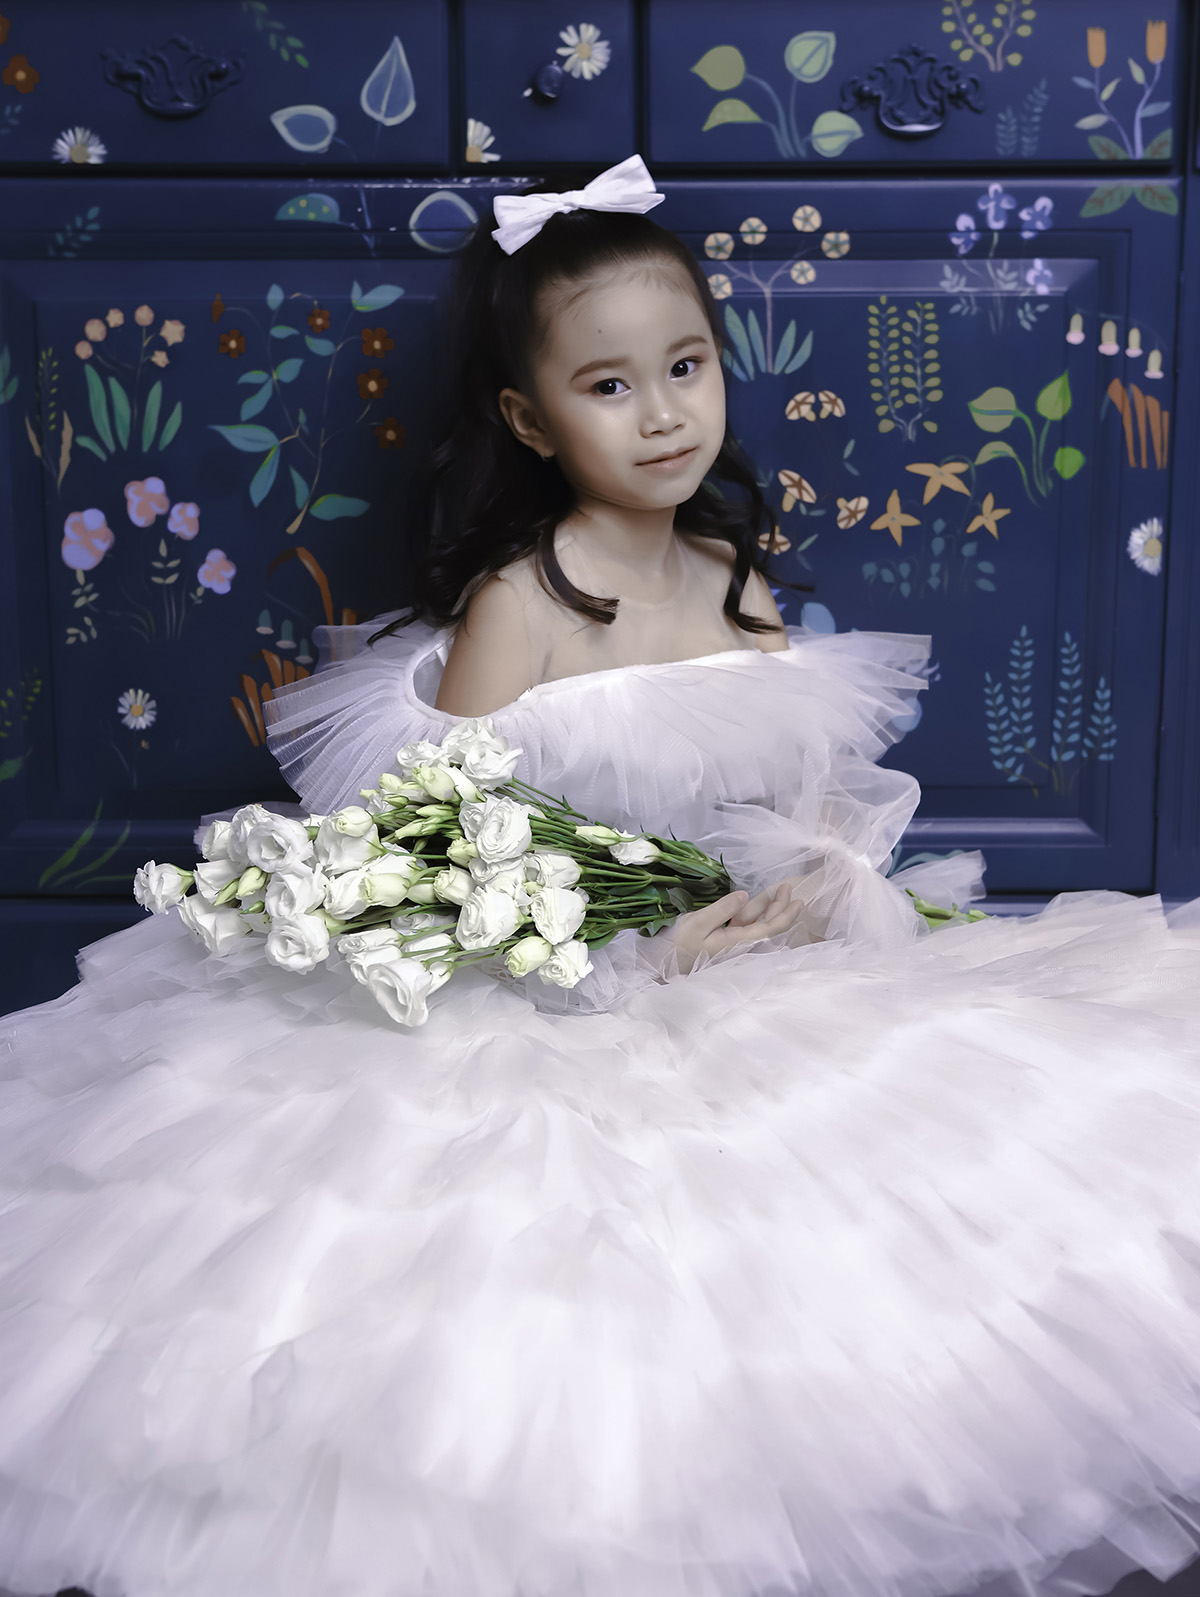 Mẫu nhí 7 tuổi Đồng Ngân hóa thân thành công chúa trong thiết kế của Nguyễn Minh Công